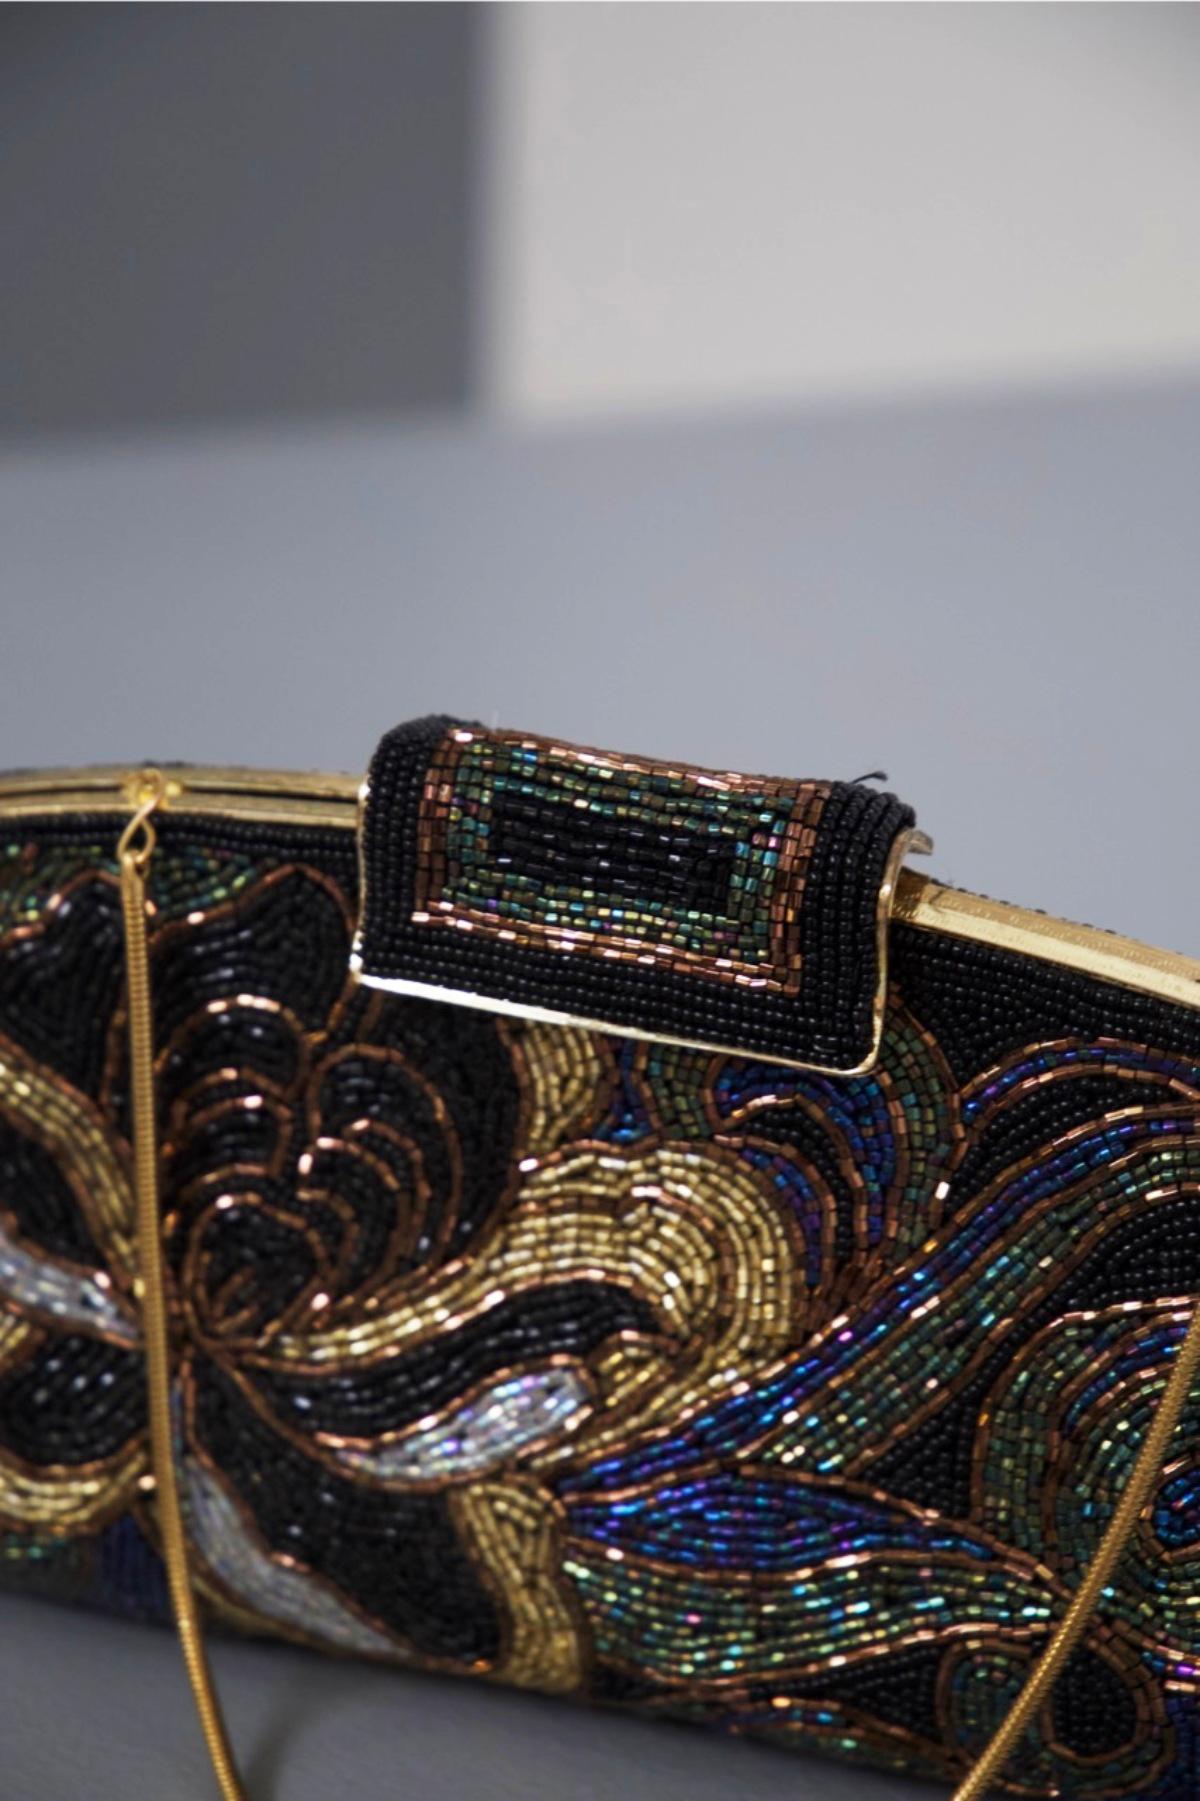 Elegante Clutch-Tasche aus Stoff mit Perlenverzierungen aus feiner italienischer Fertigung, aus den 1980er Jahren.
Die Kupplung ist eine Handtasche für Theater oder Gelegenheiten sehr gesetzt und elegant über normal, hat eine abgeschrägte halb-ovale